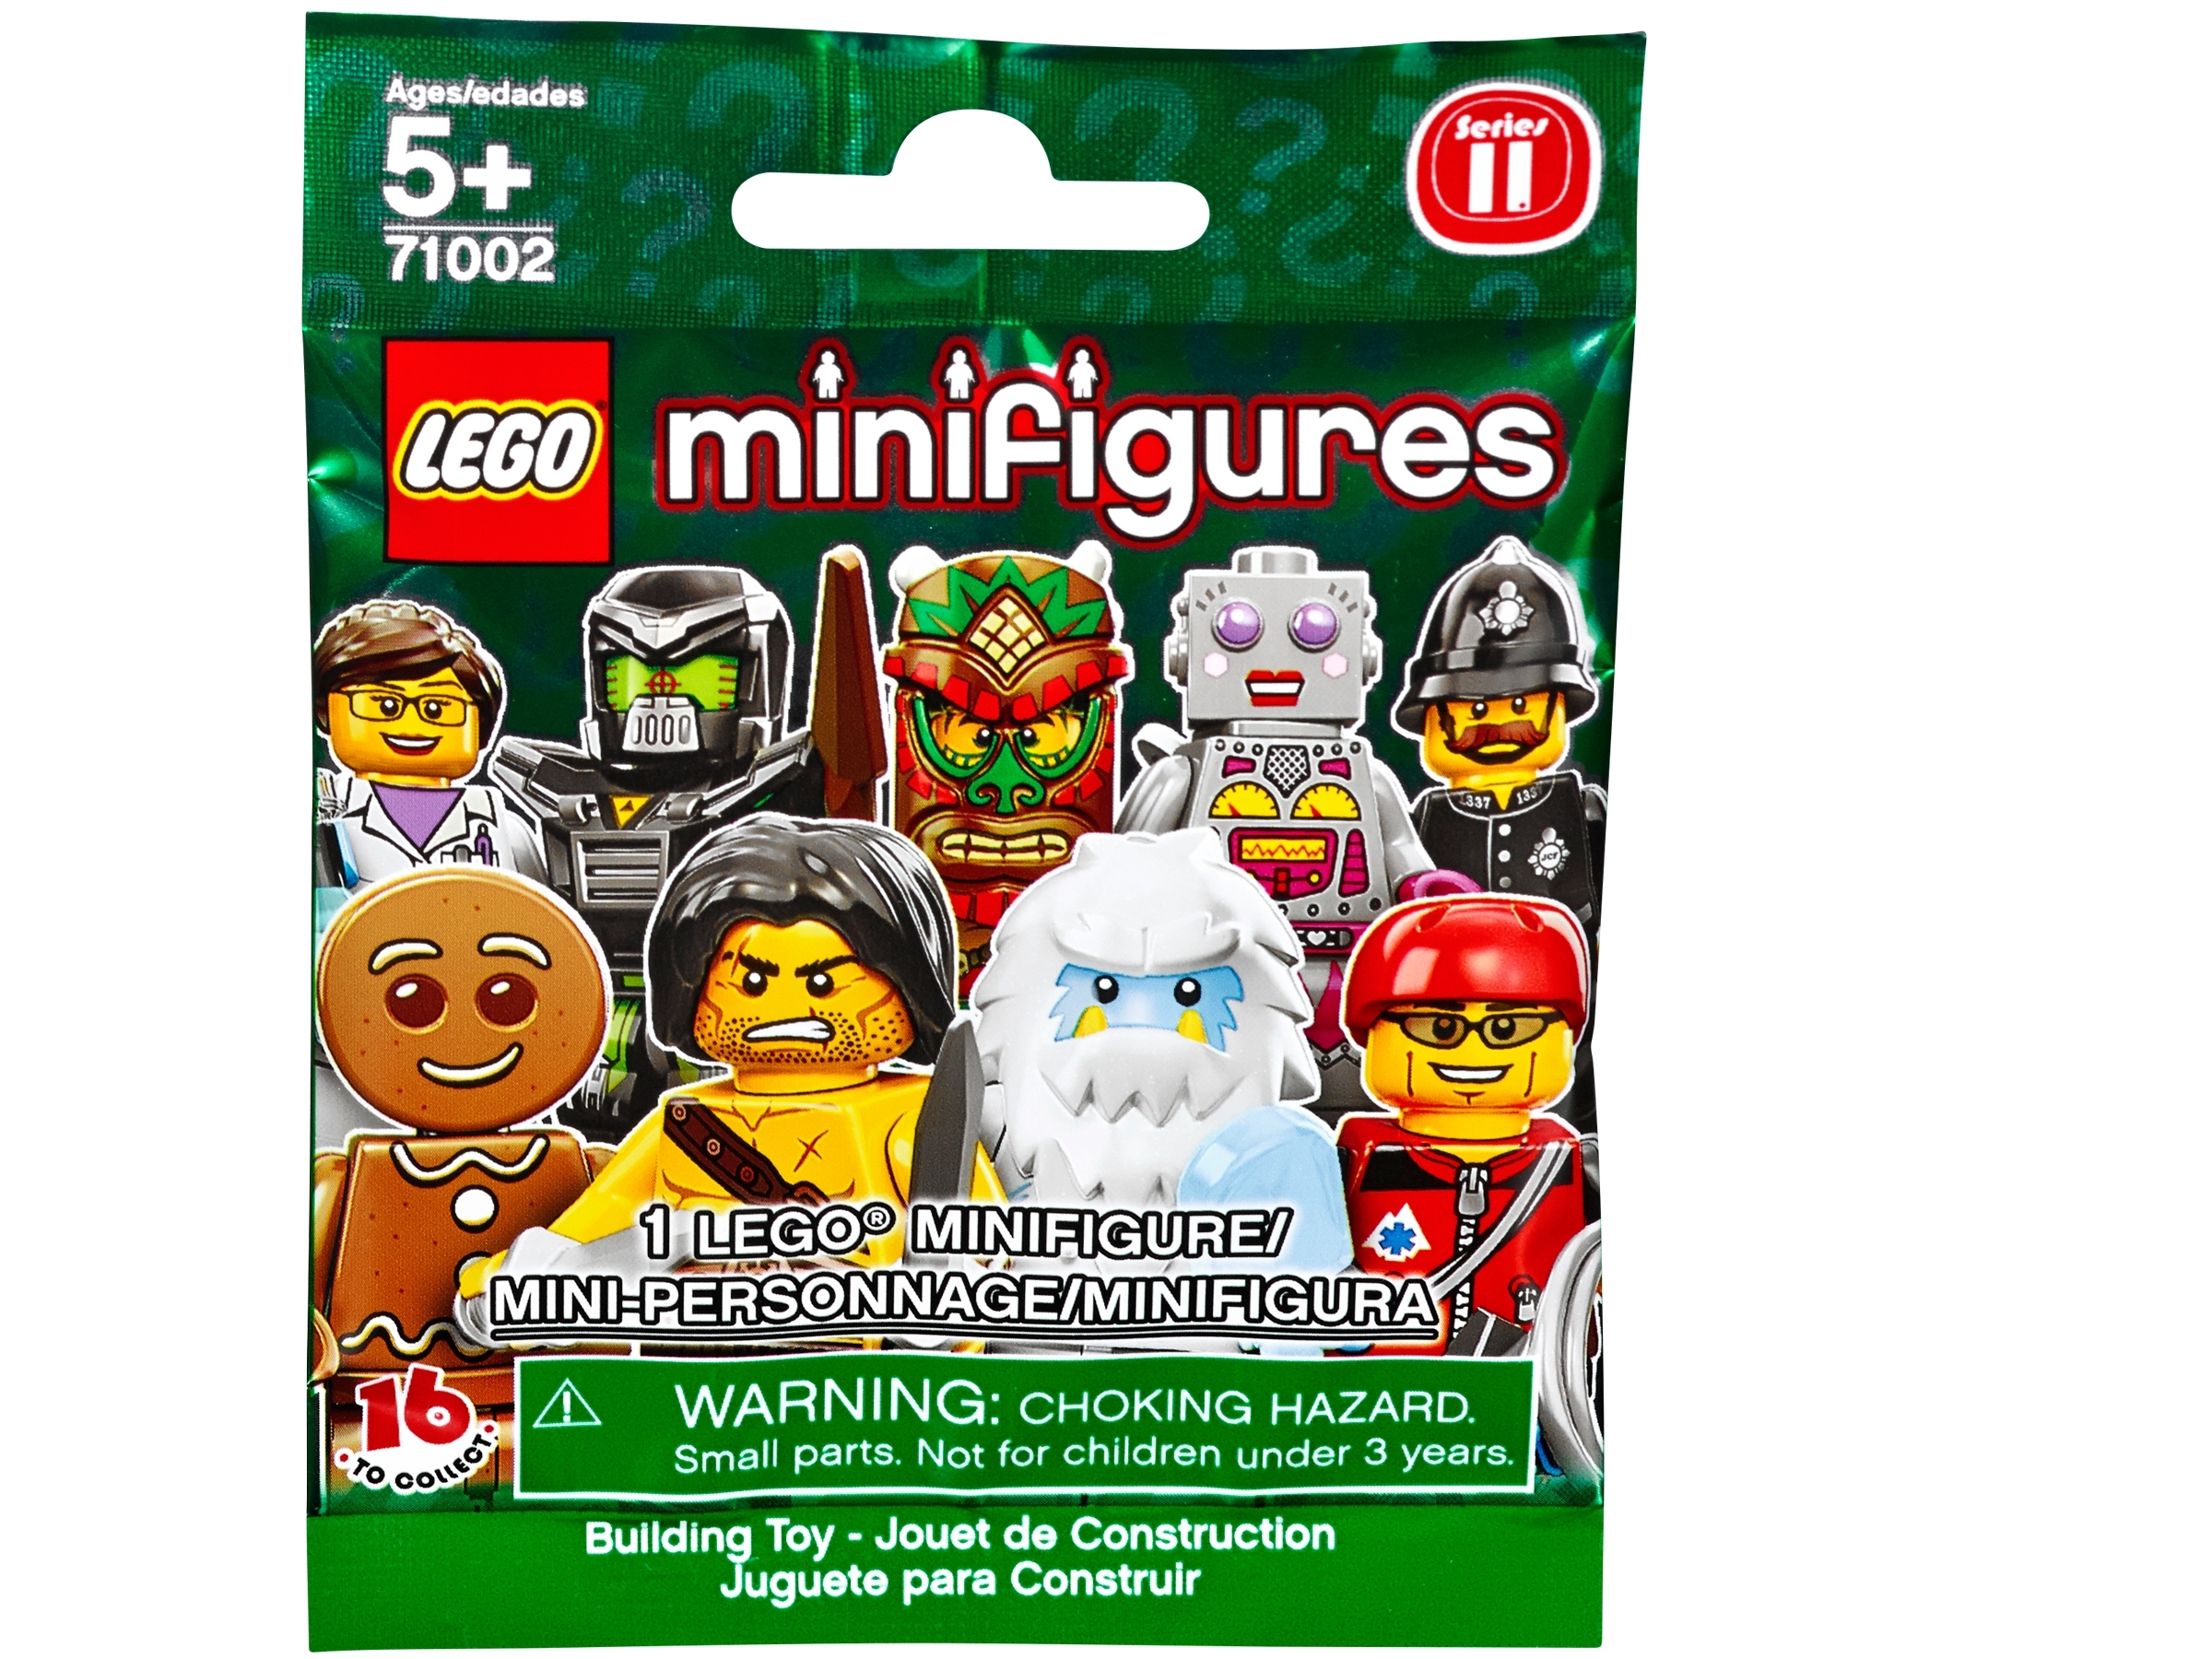 Lego Minifigures 11 Series científico/Nuevo 